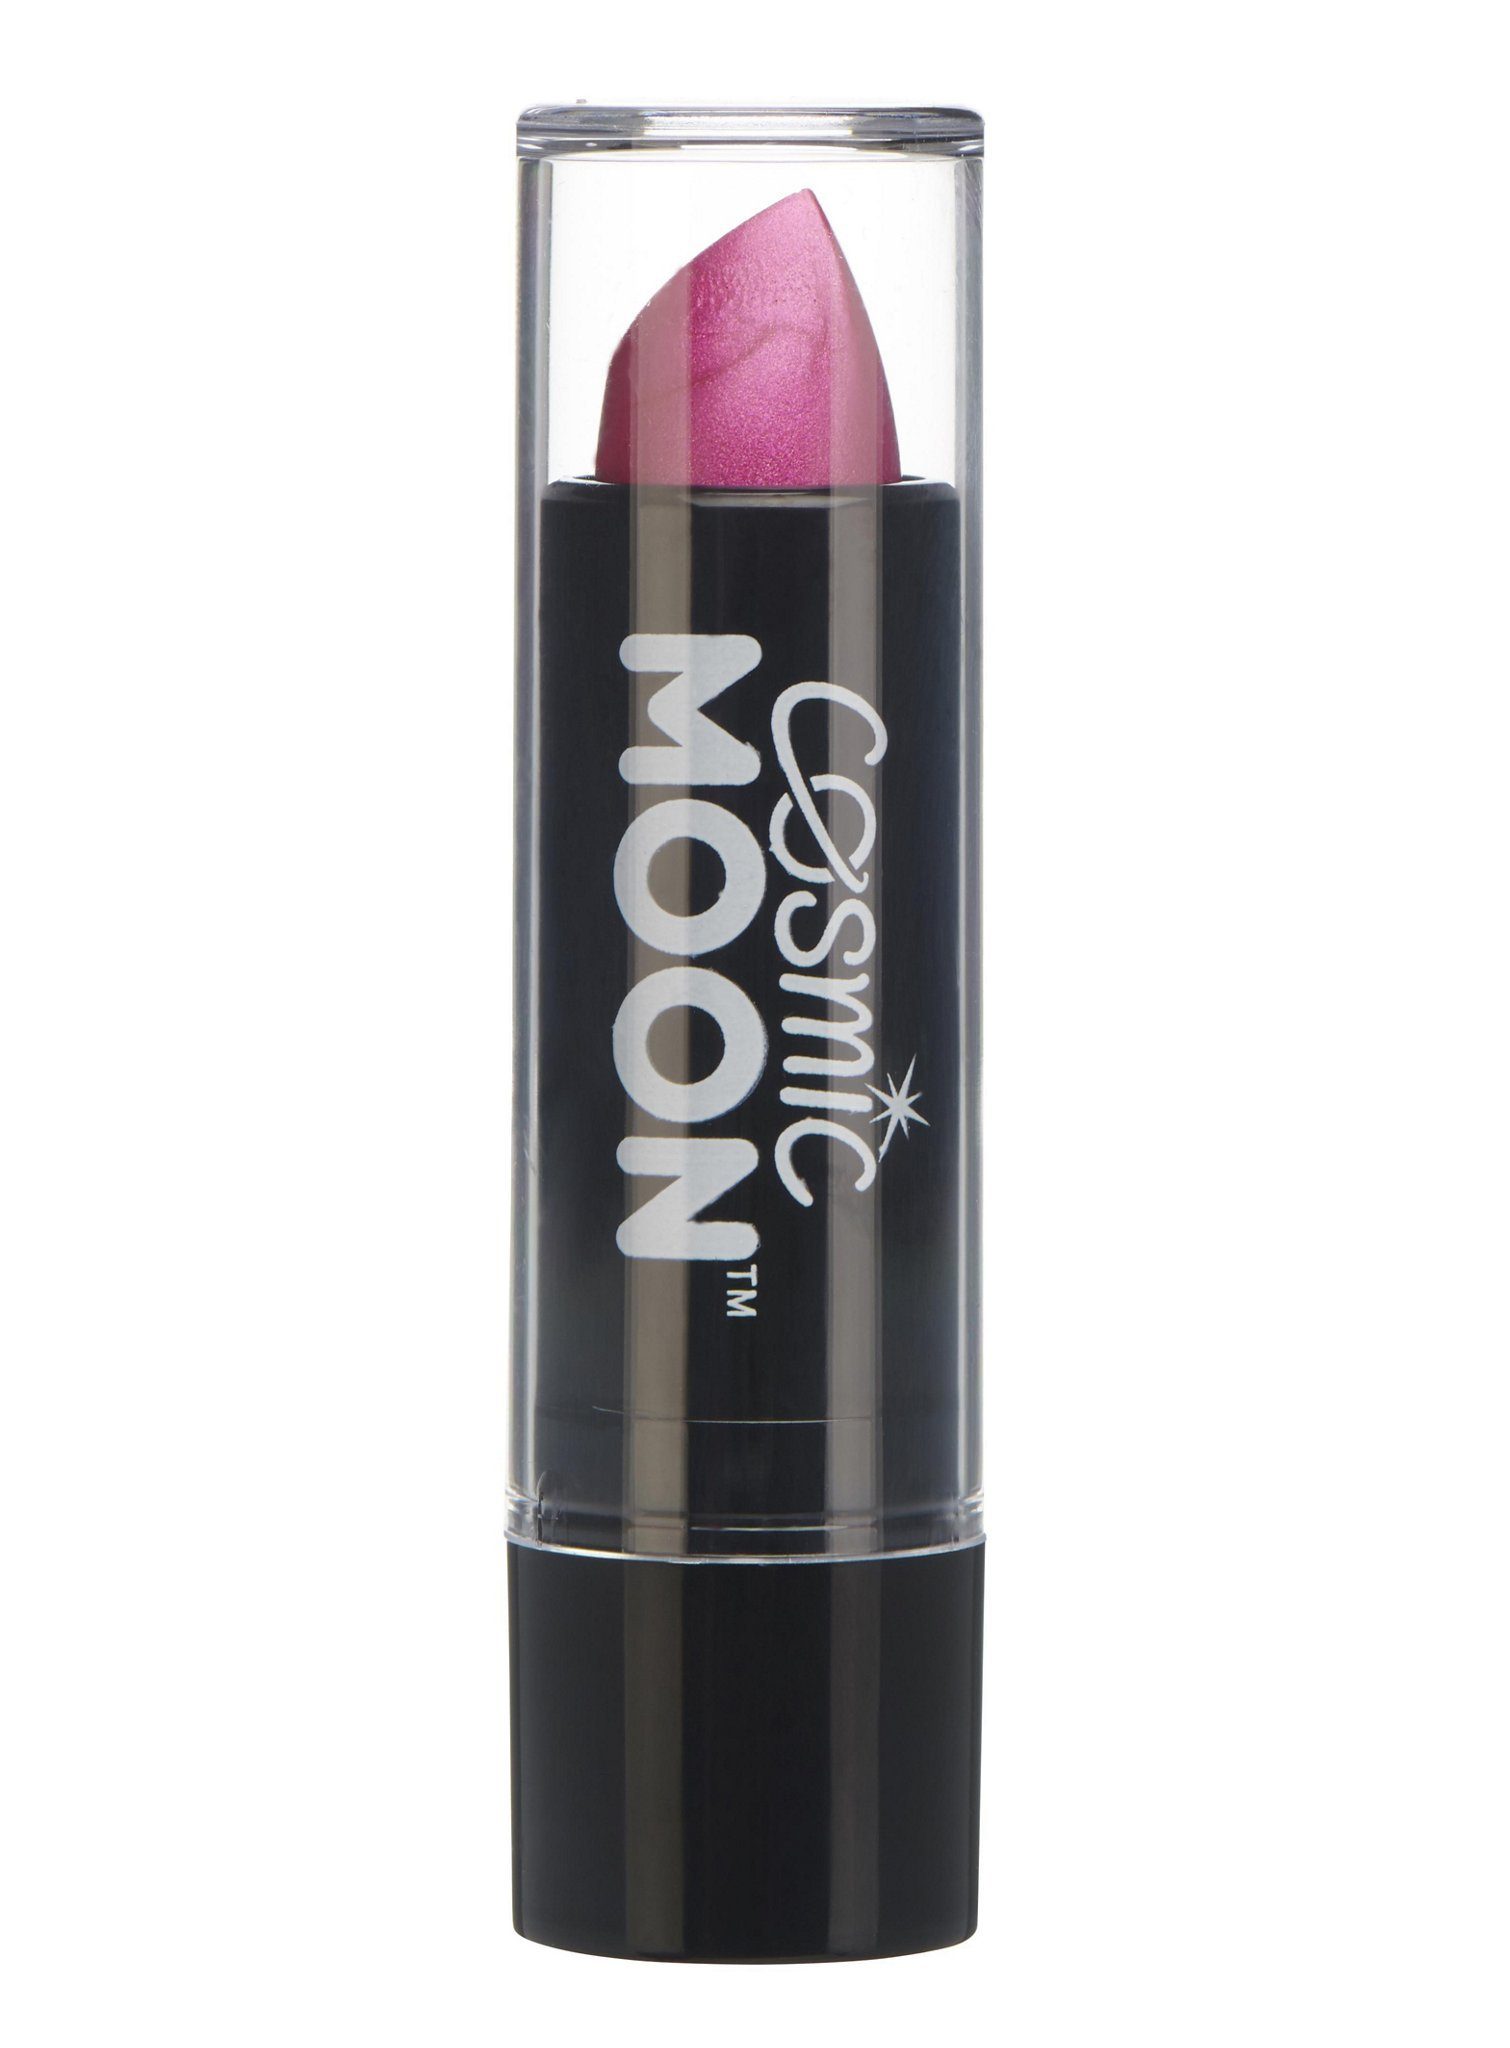 Smiffys Lippenstift Cosmic Moon Metallic Lippenstift pink, Metallisch schimmernder Lippenstift für einen aufregenden Look zu Fas